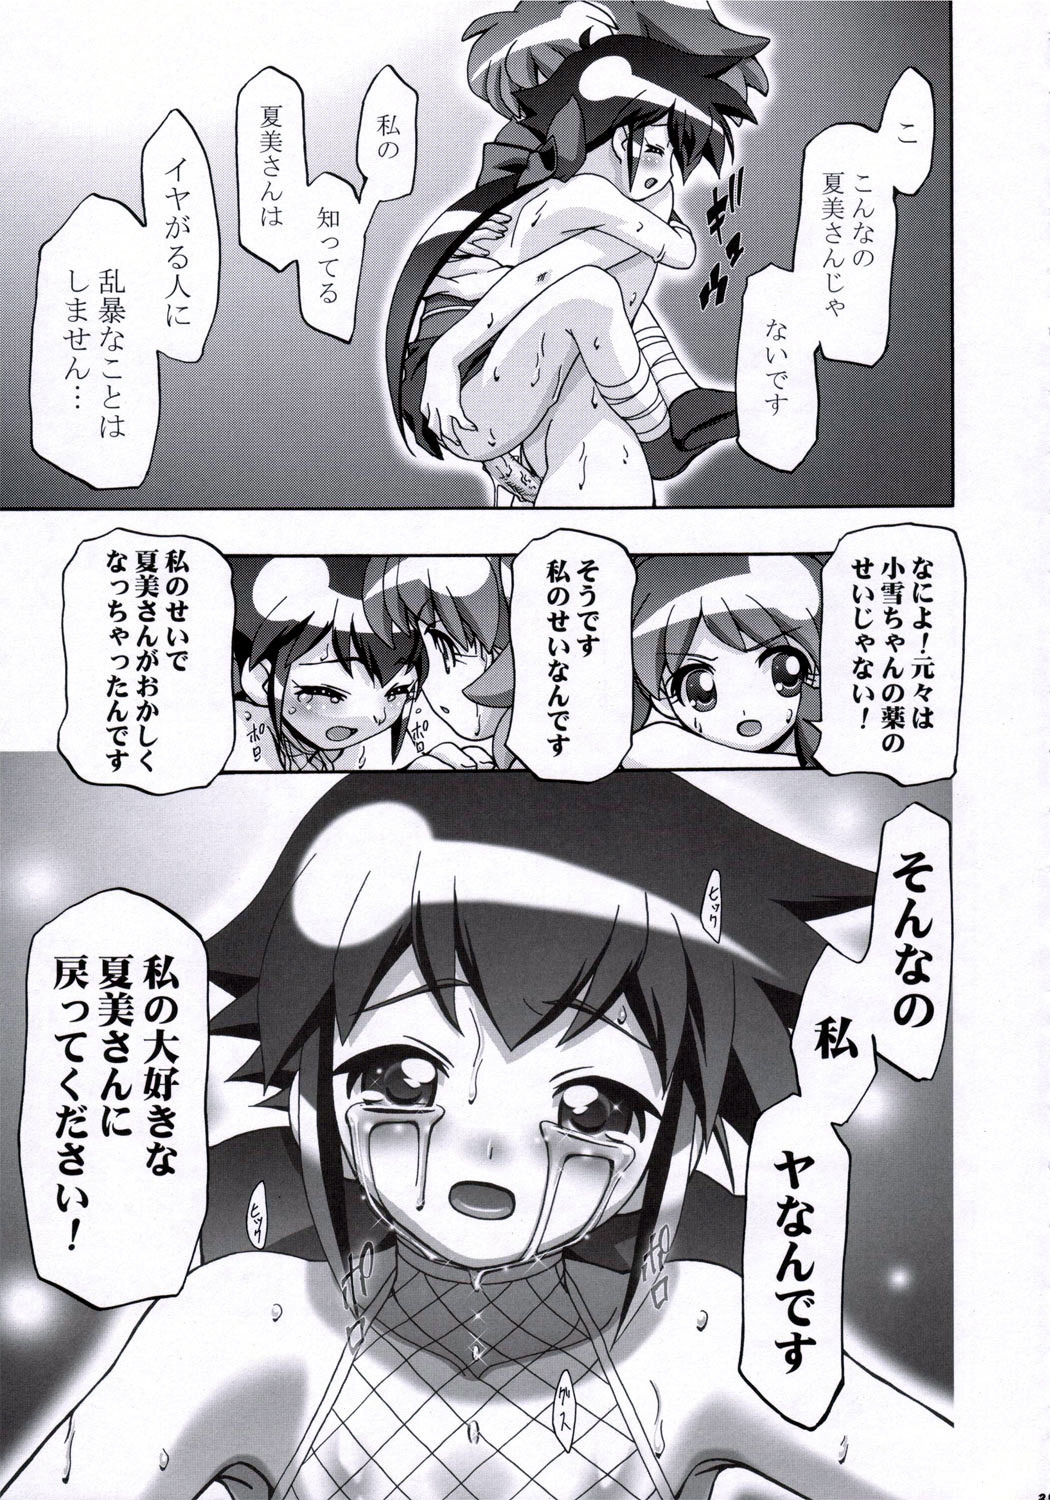 (SC31) [Gambler Club (Kousaka Jun)] Natsu Yuki - Summer Snow (Keroro Gunsou) page 34 full